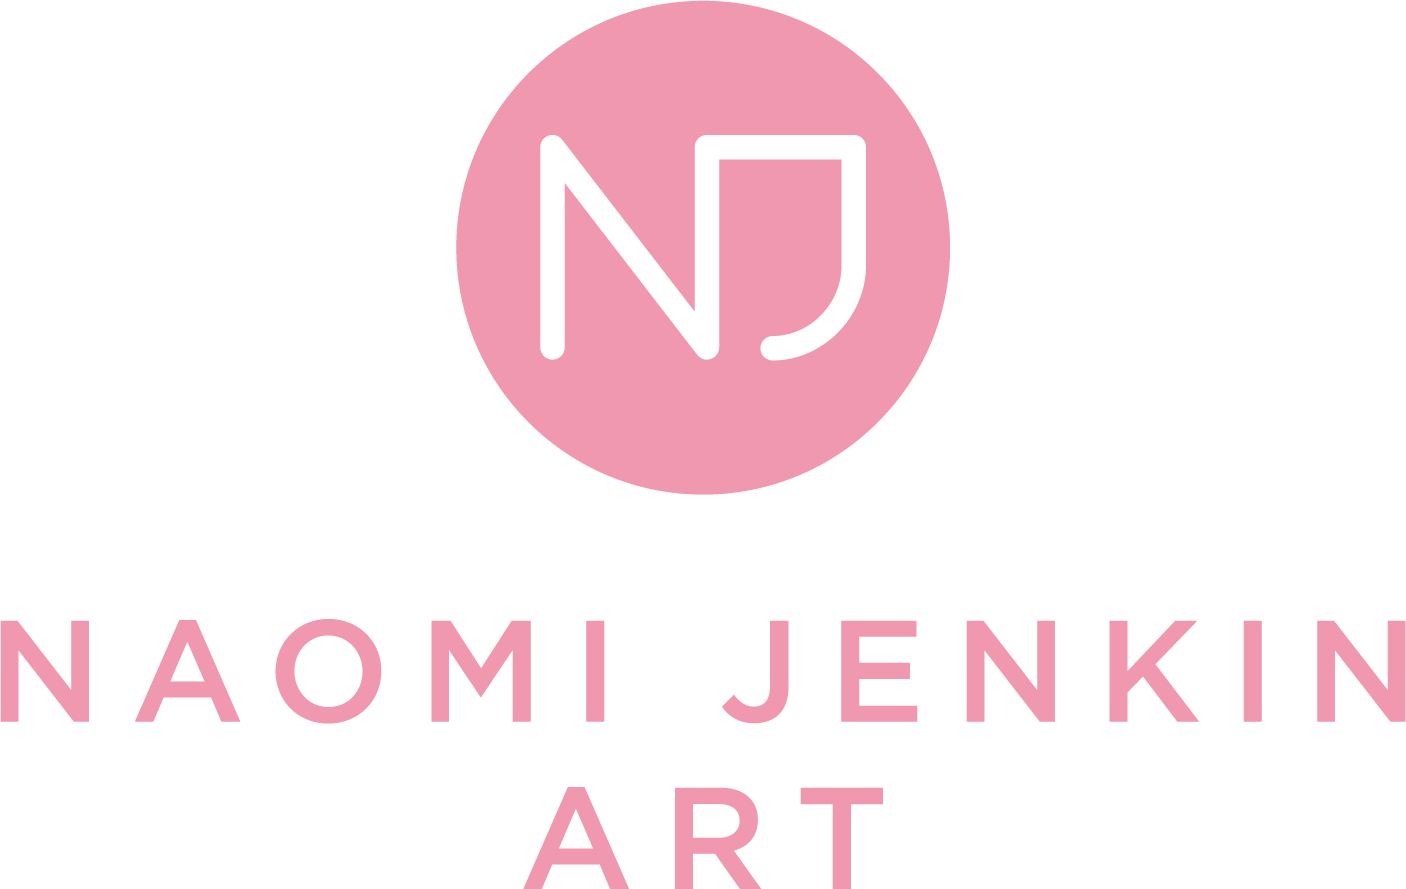 Naomi Jenkin Art